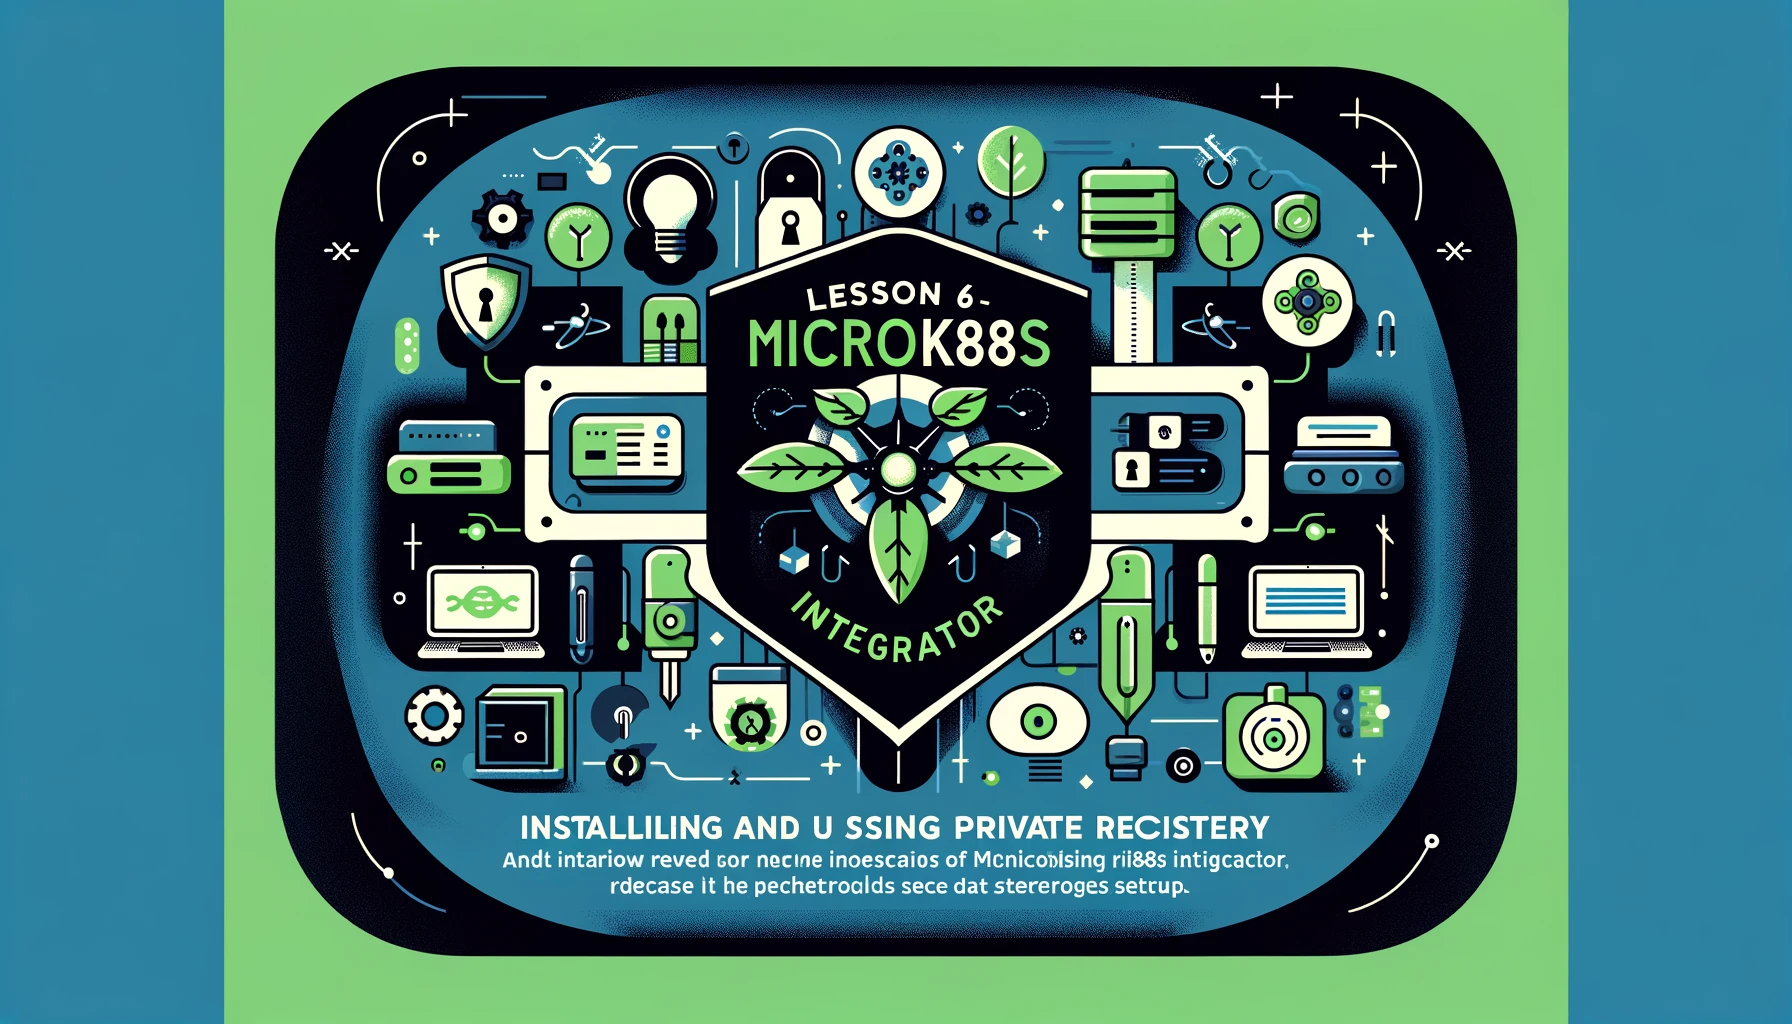 Bài 5 - Cài đặt và sử dụng private registry trong bộ tích hợp của Microk8s